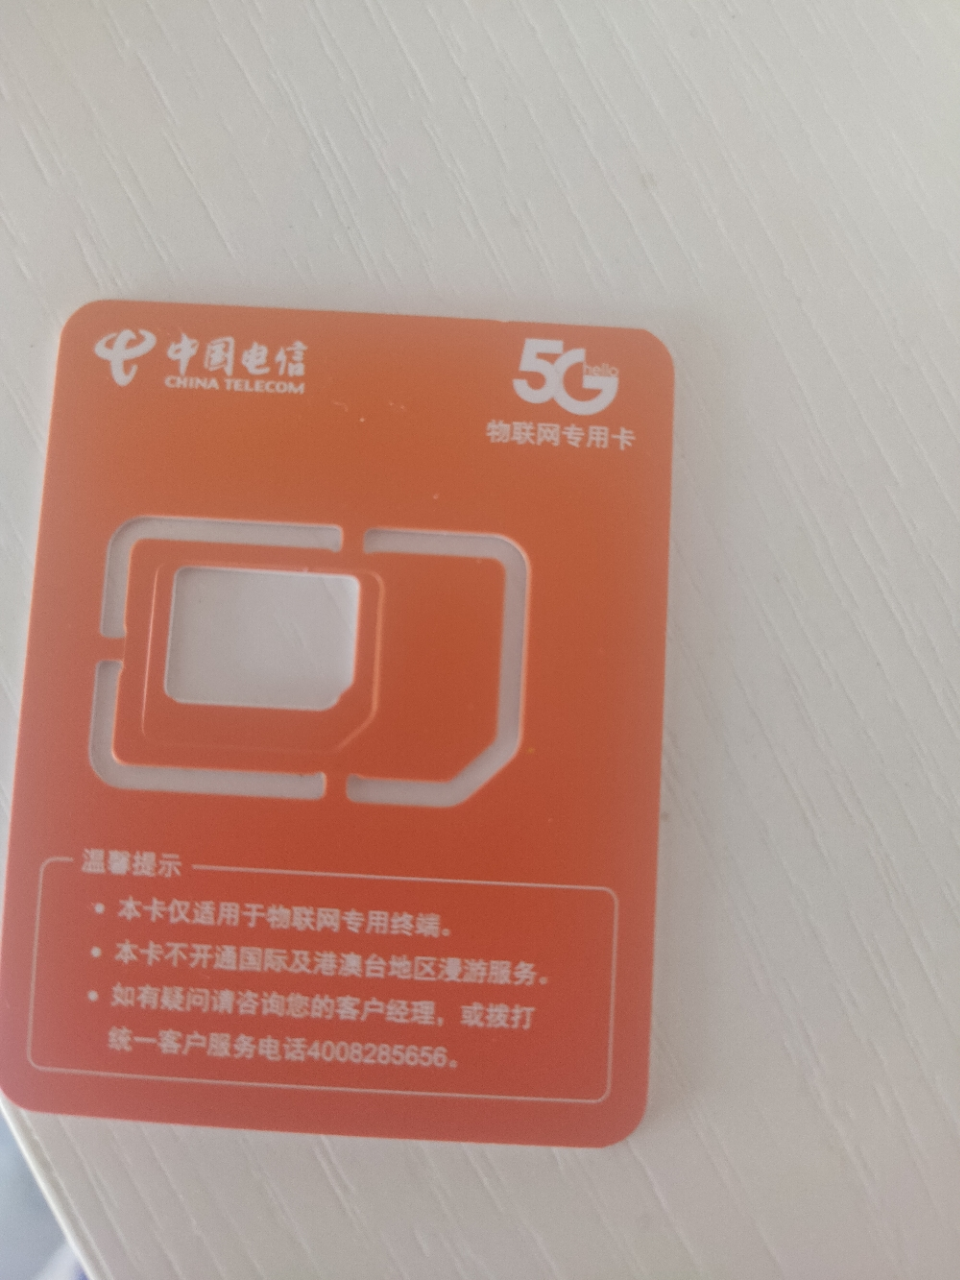 全新中国联通流量卡5g全国移动5g电话卡国内通用流量5g不限速0月租三